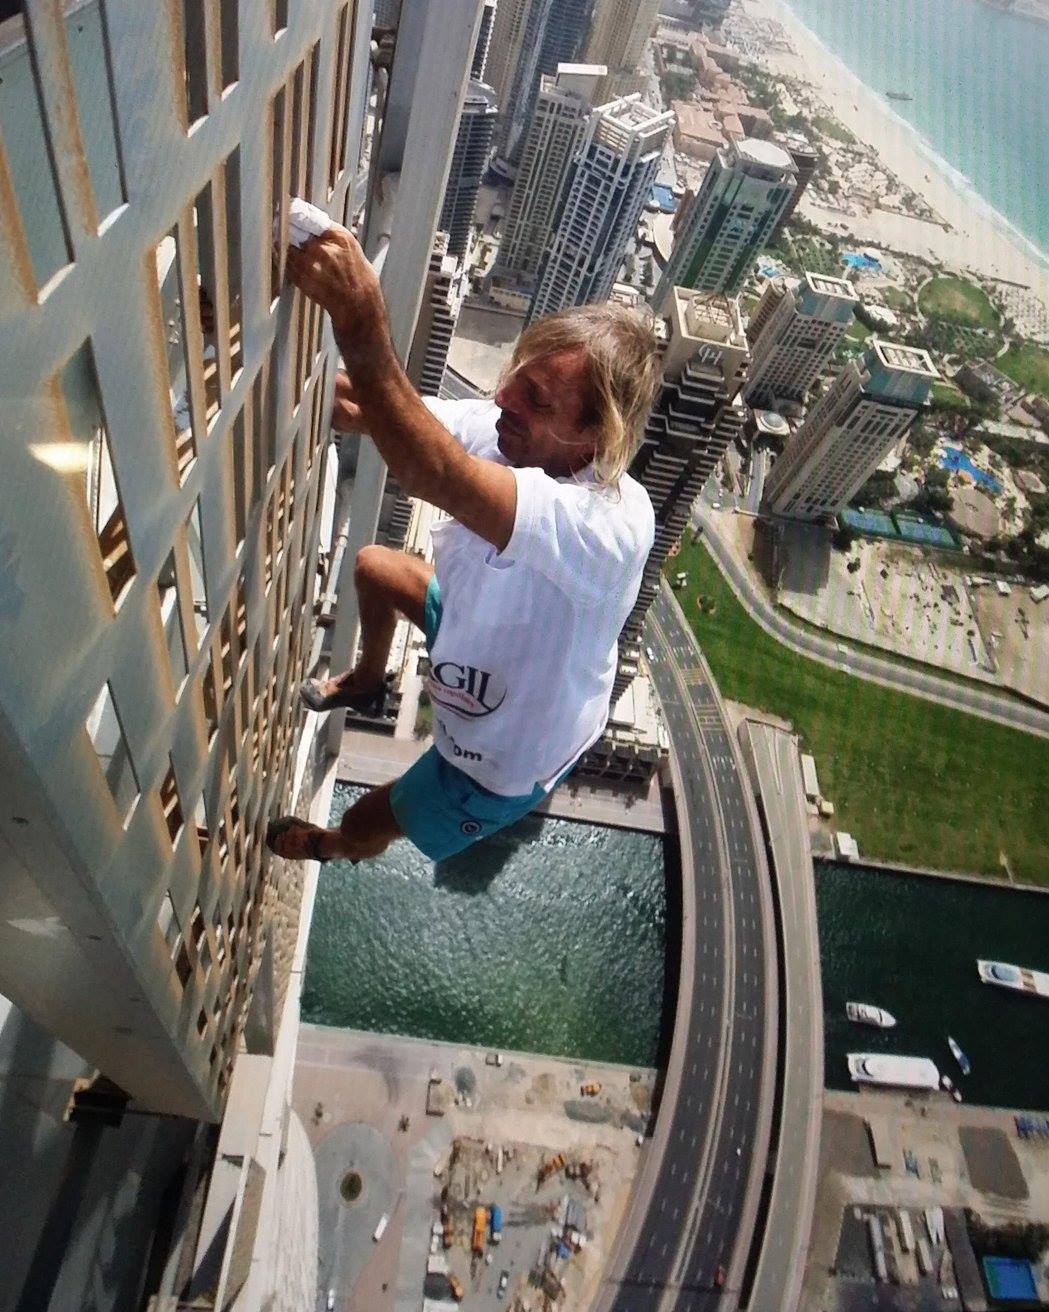 Alain Robert atleta escalador orador motivacional inspirador francés Spiderman